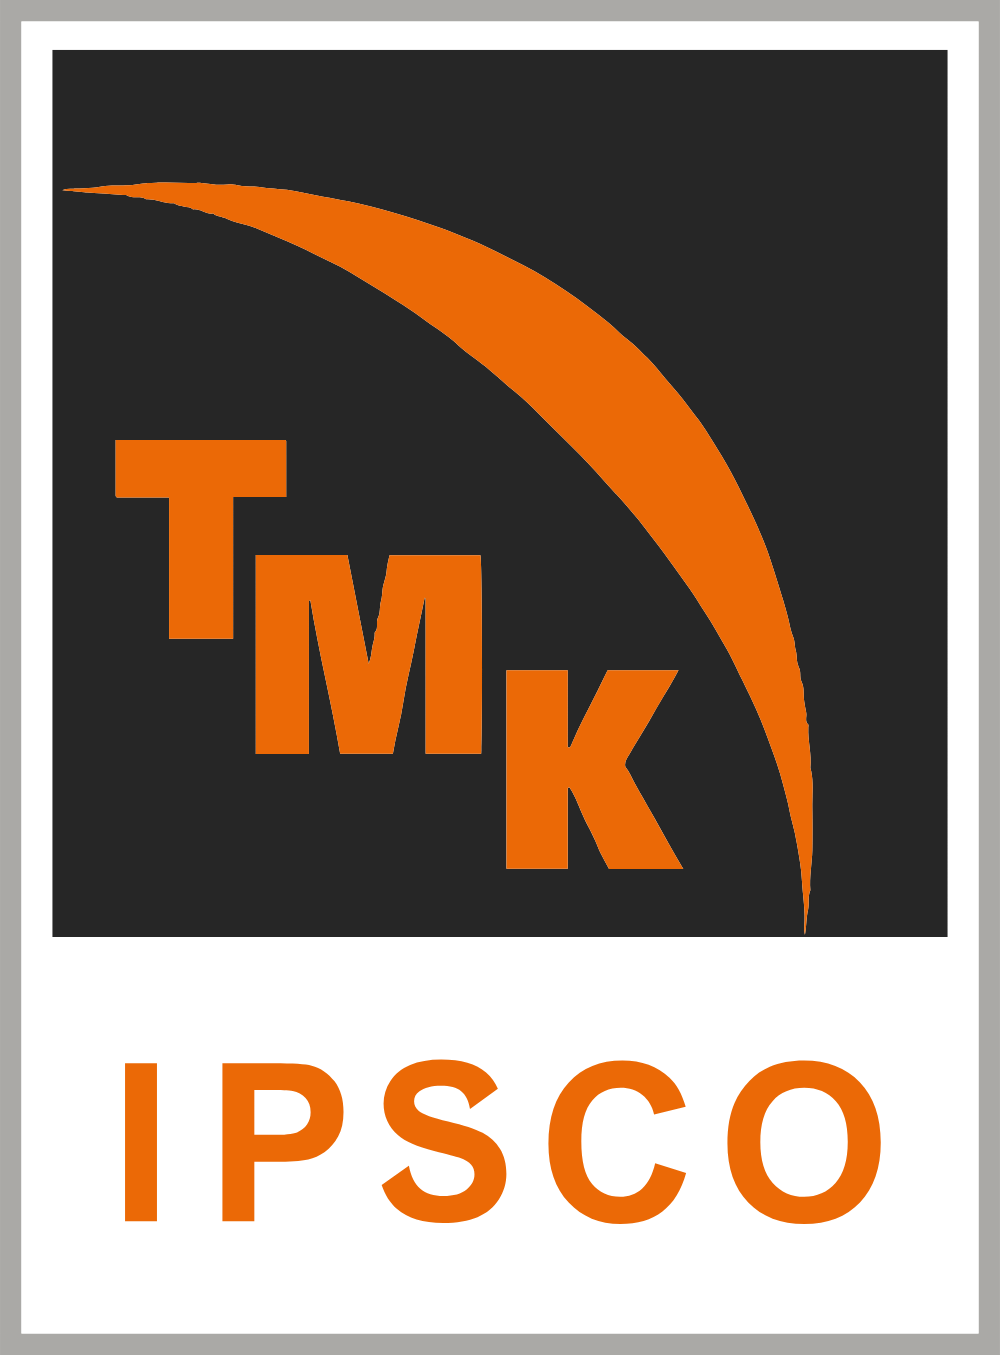 TMK IPSCO Logo Logos